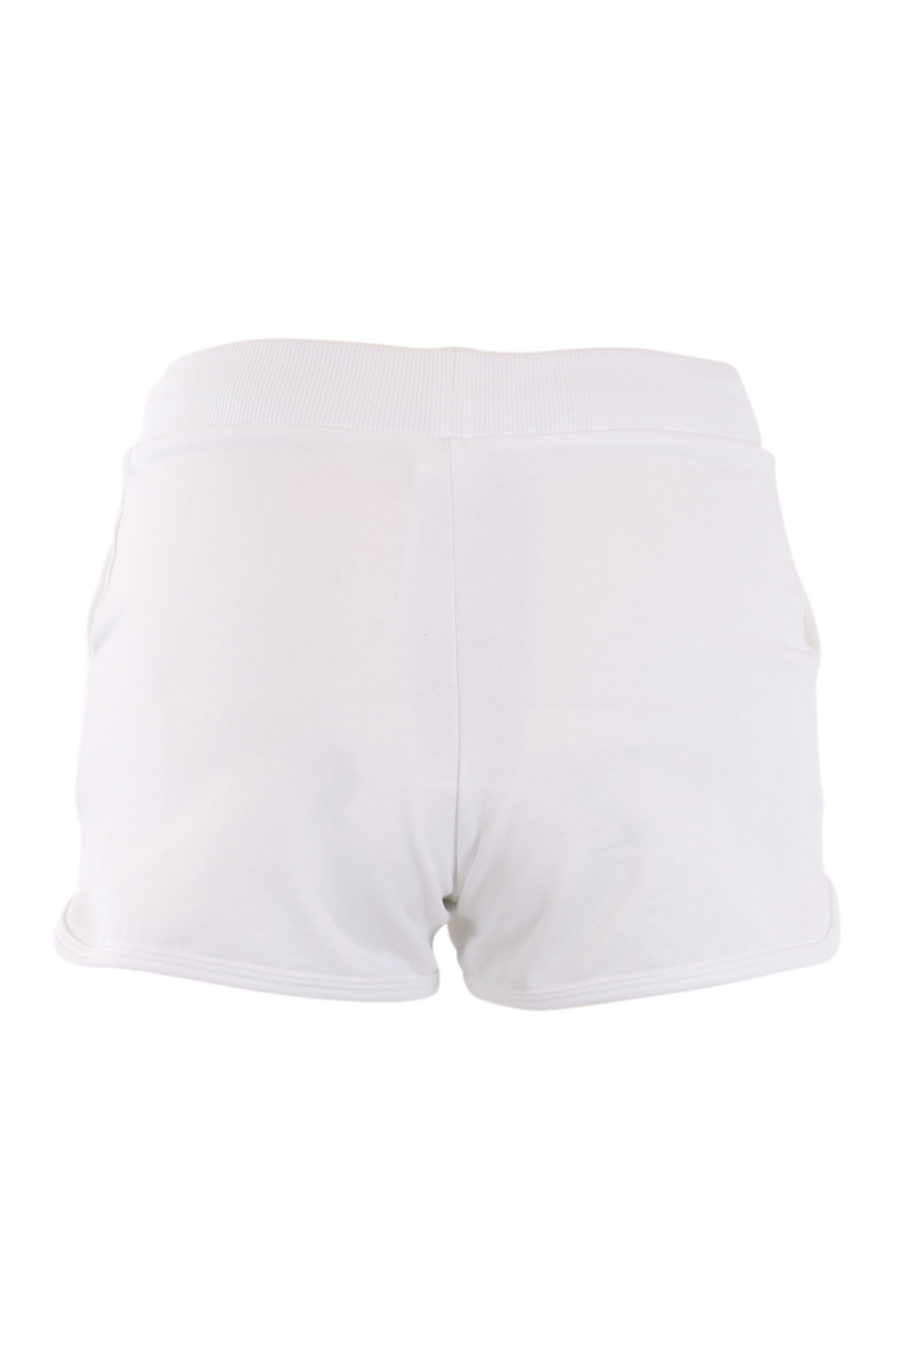 Pantalón corto blanco con logo tropical lateral - IMG 0562